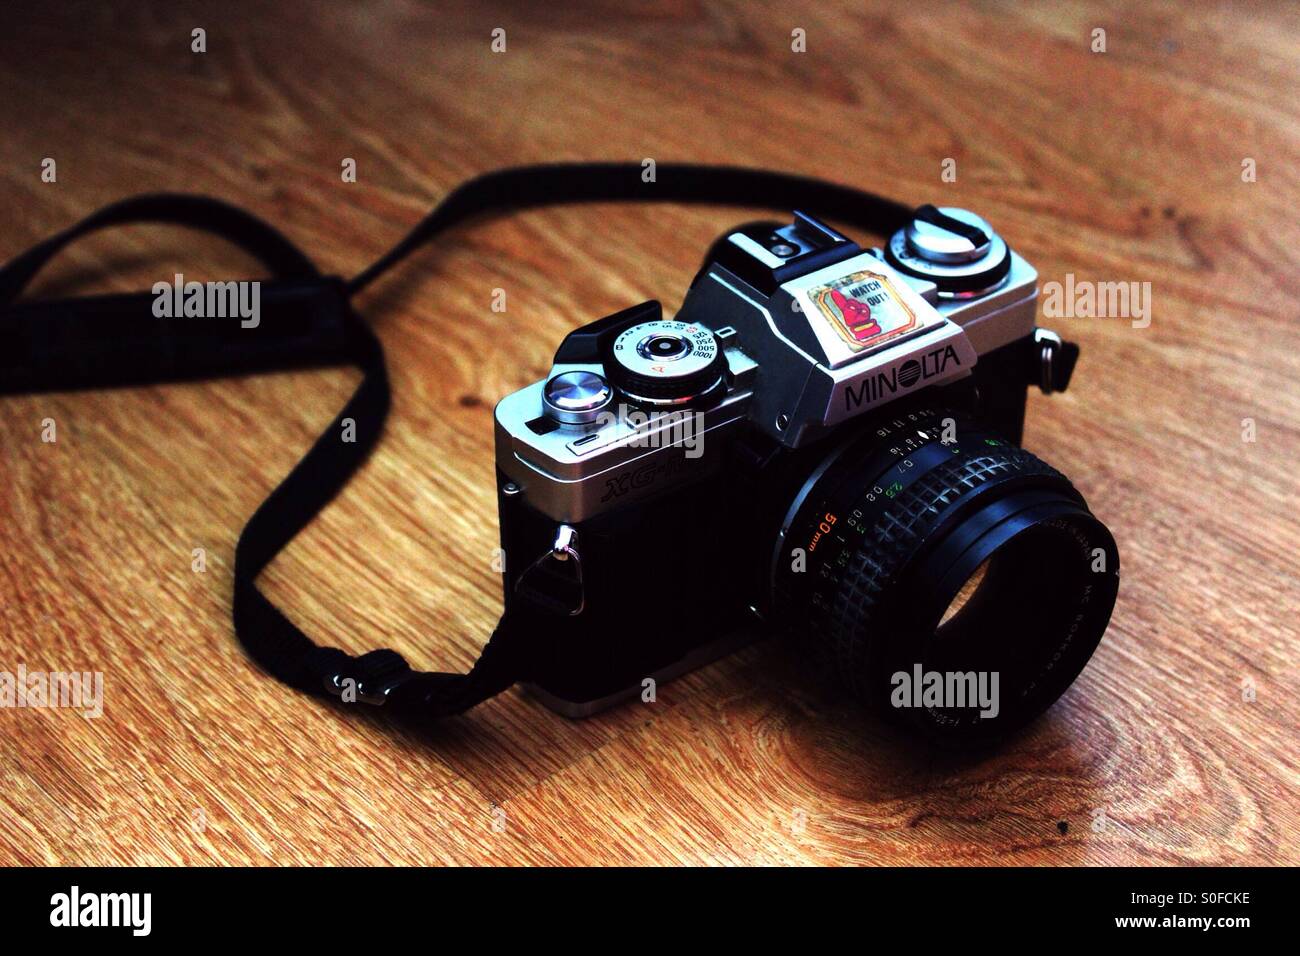 Vecchia fotocamera Minolta Foto Stock